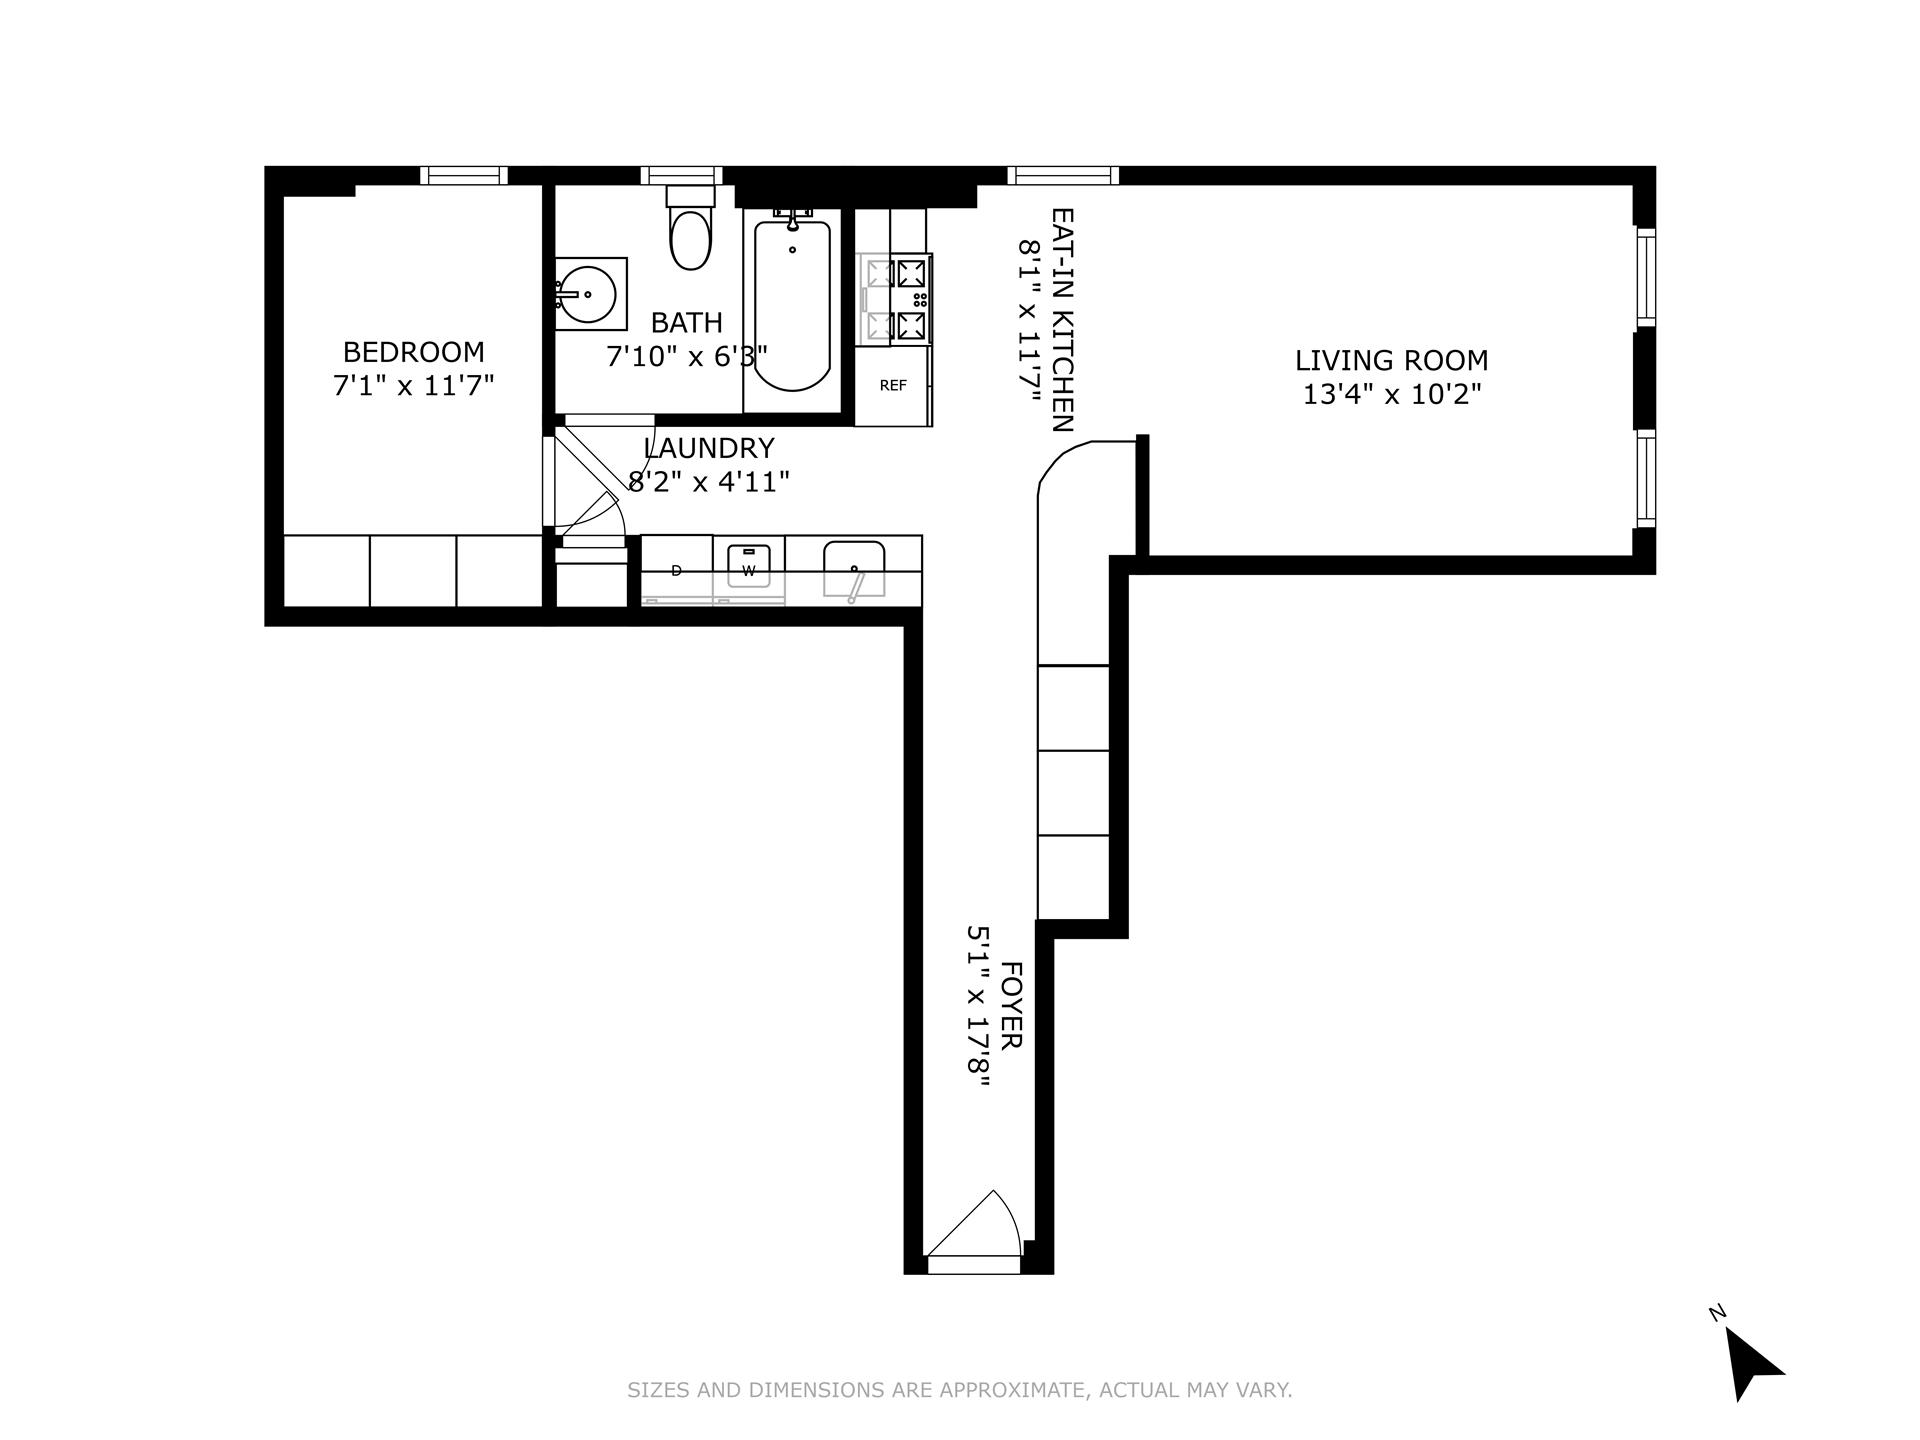 Floorplan for 407 Keap Street, 22